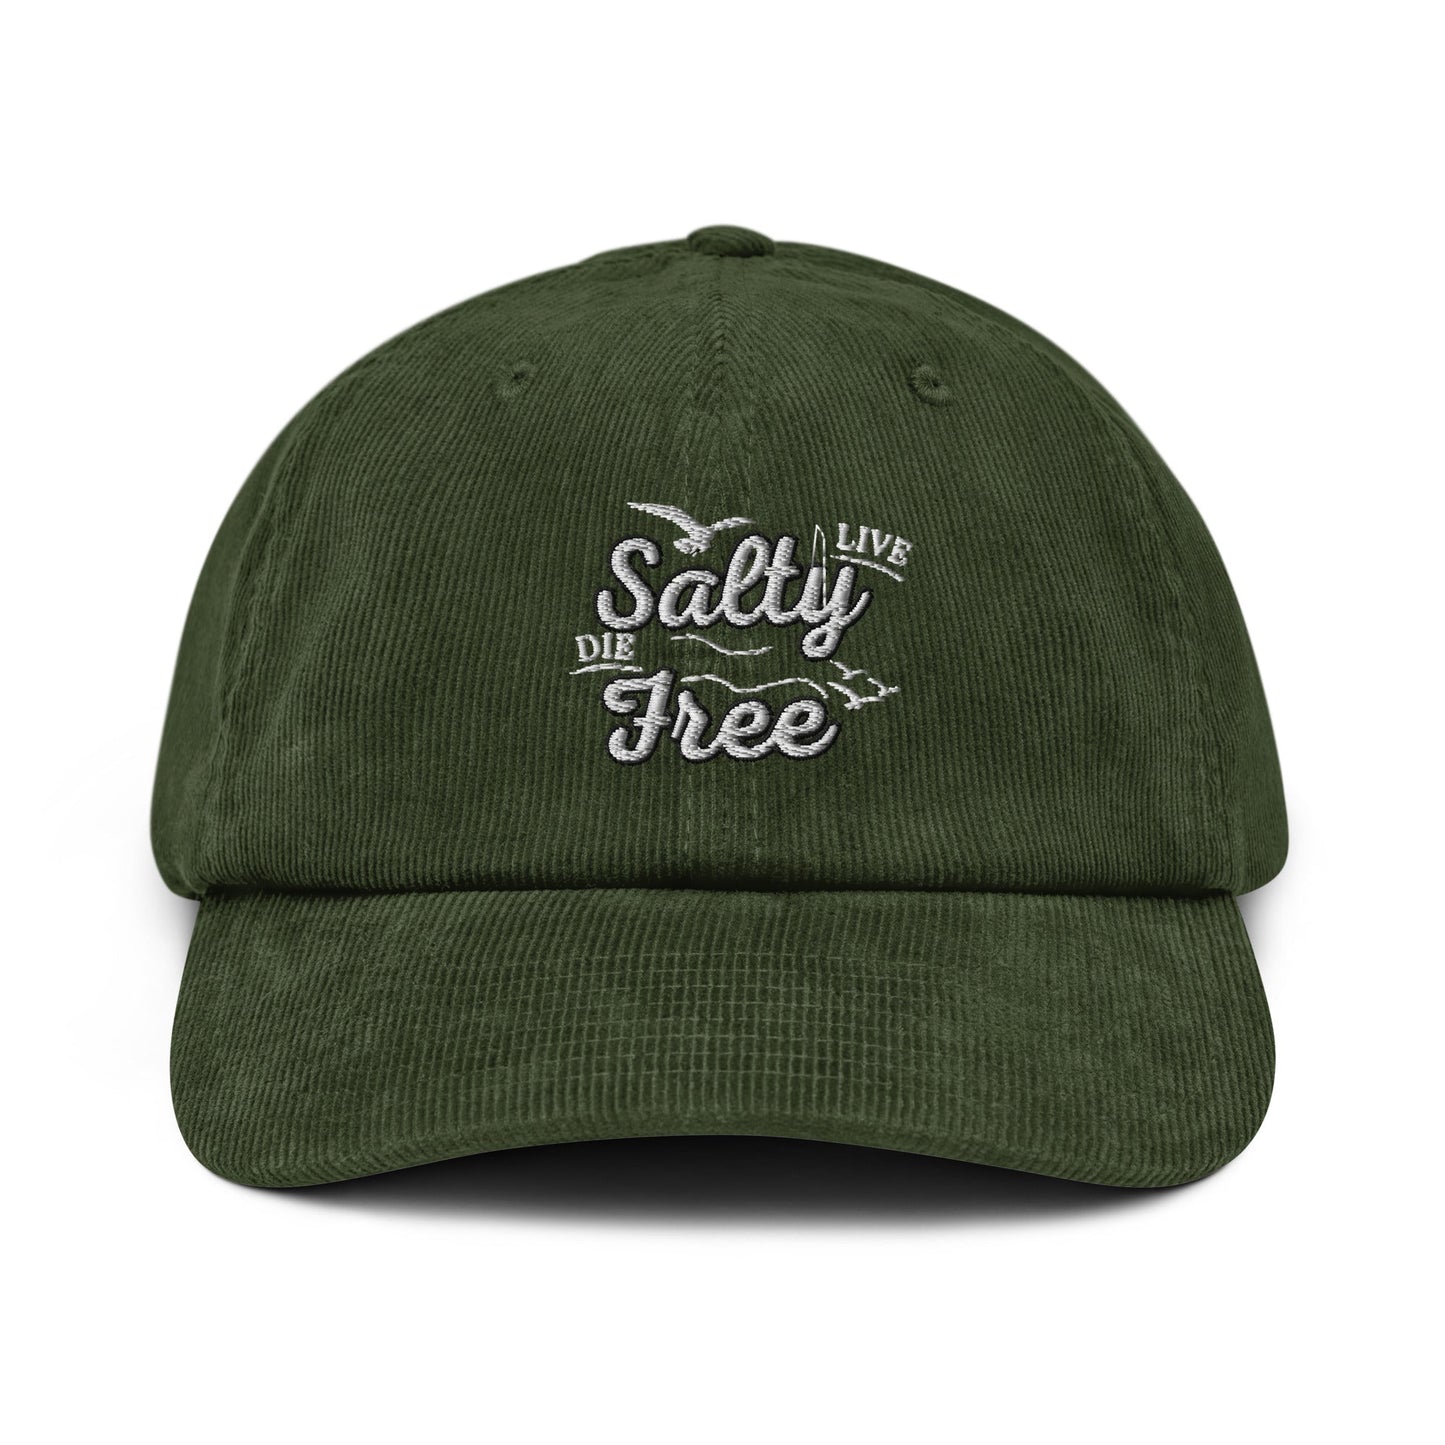 "Live Salty, Die Free" Corduroy hat - Tropical Seas Clothing 